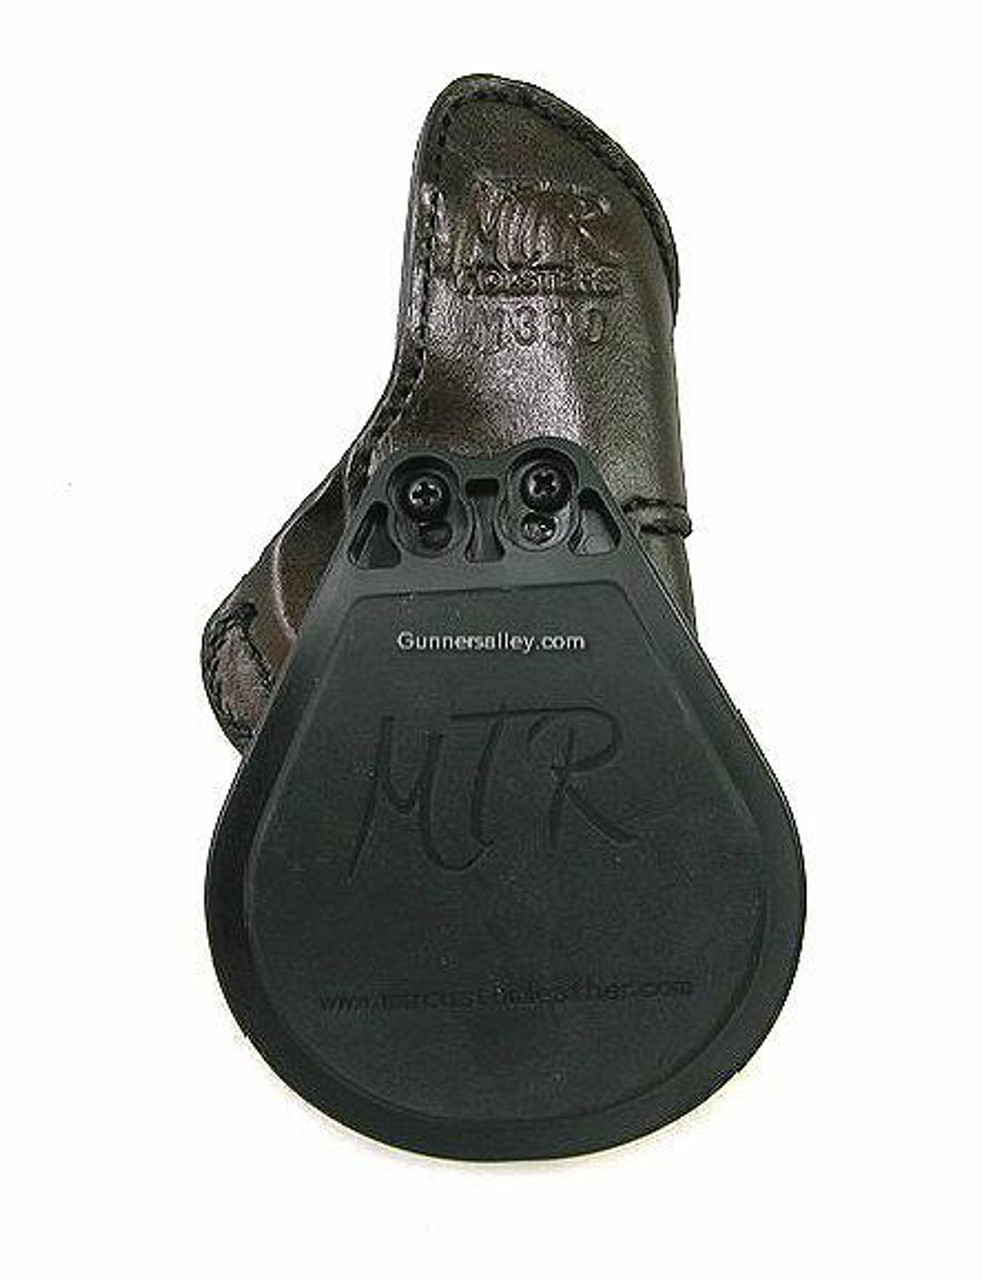 LH Mahogany MTR Custom Paddle Holster Kimber Micro 380 - Rear View